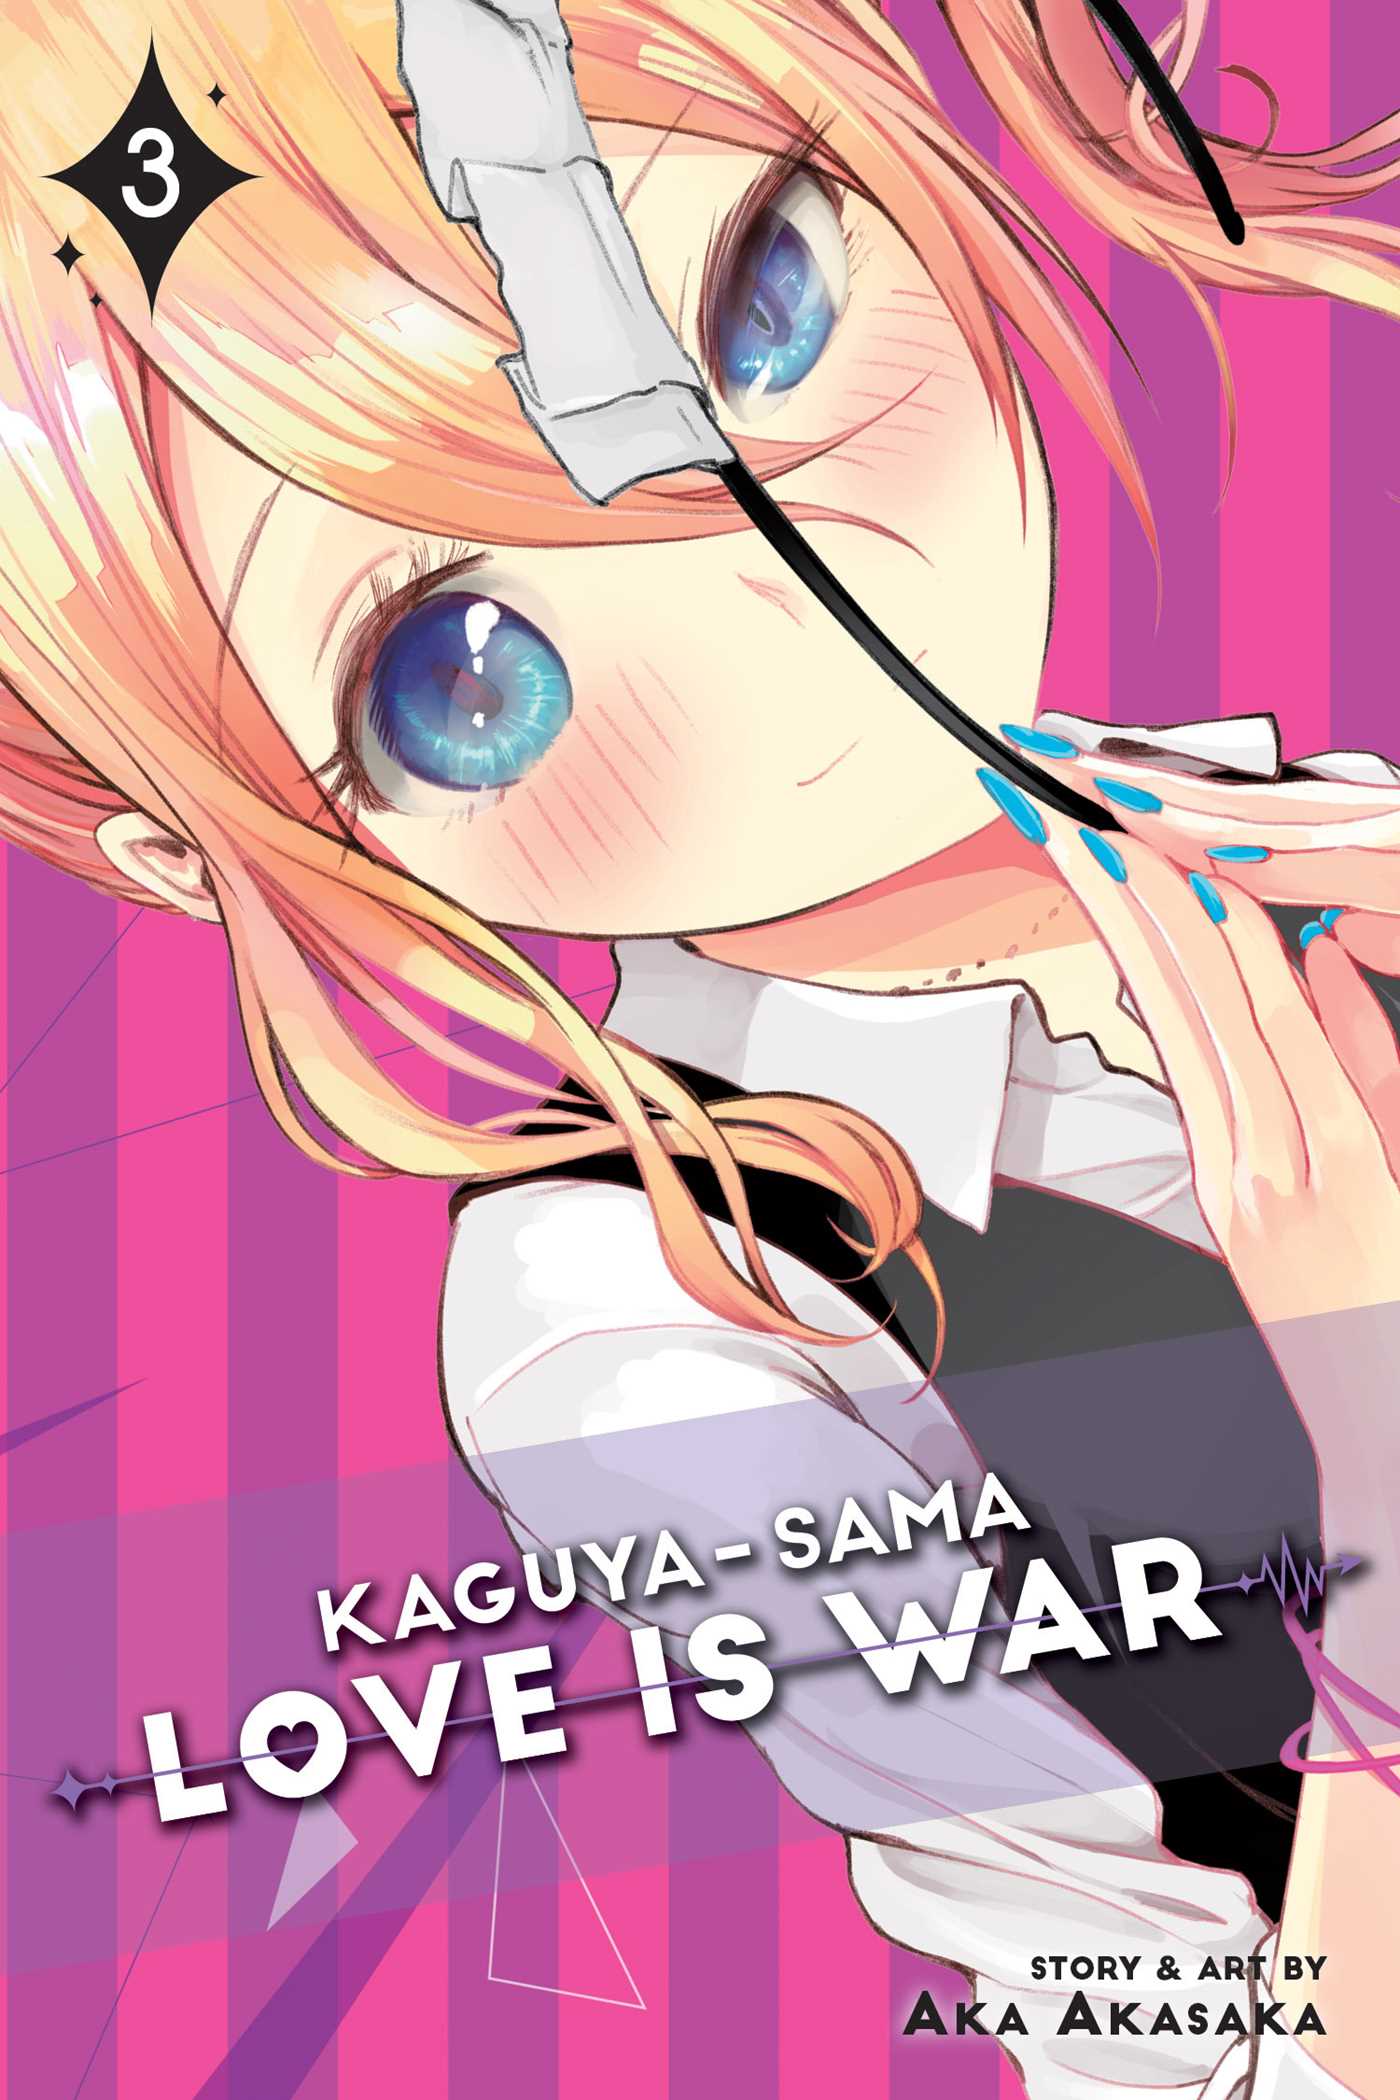 Kaguya-sama Love Is War  Vol. 3